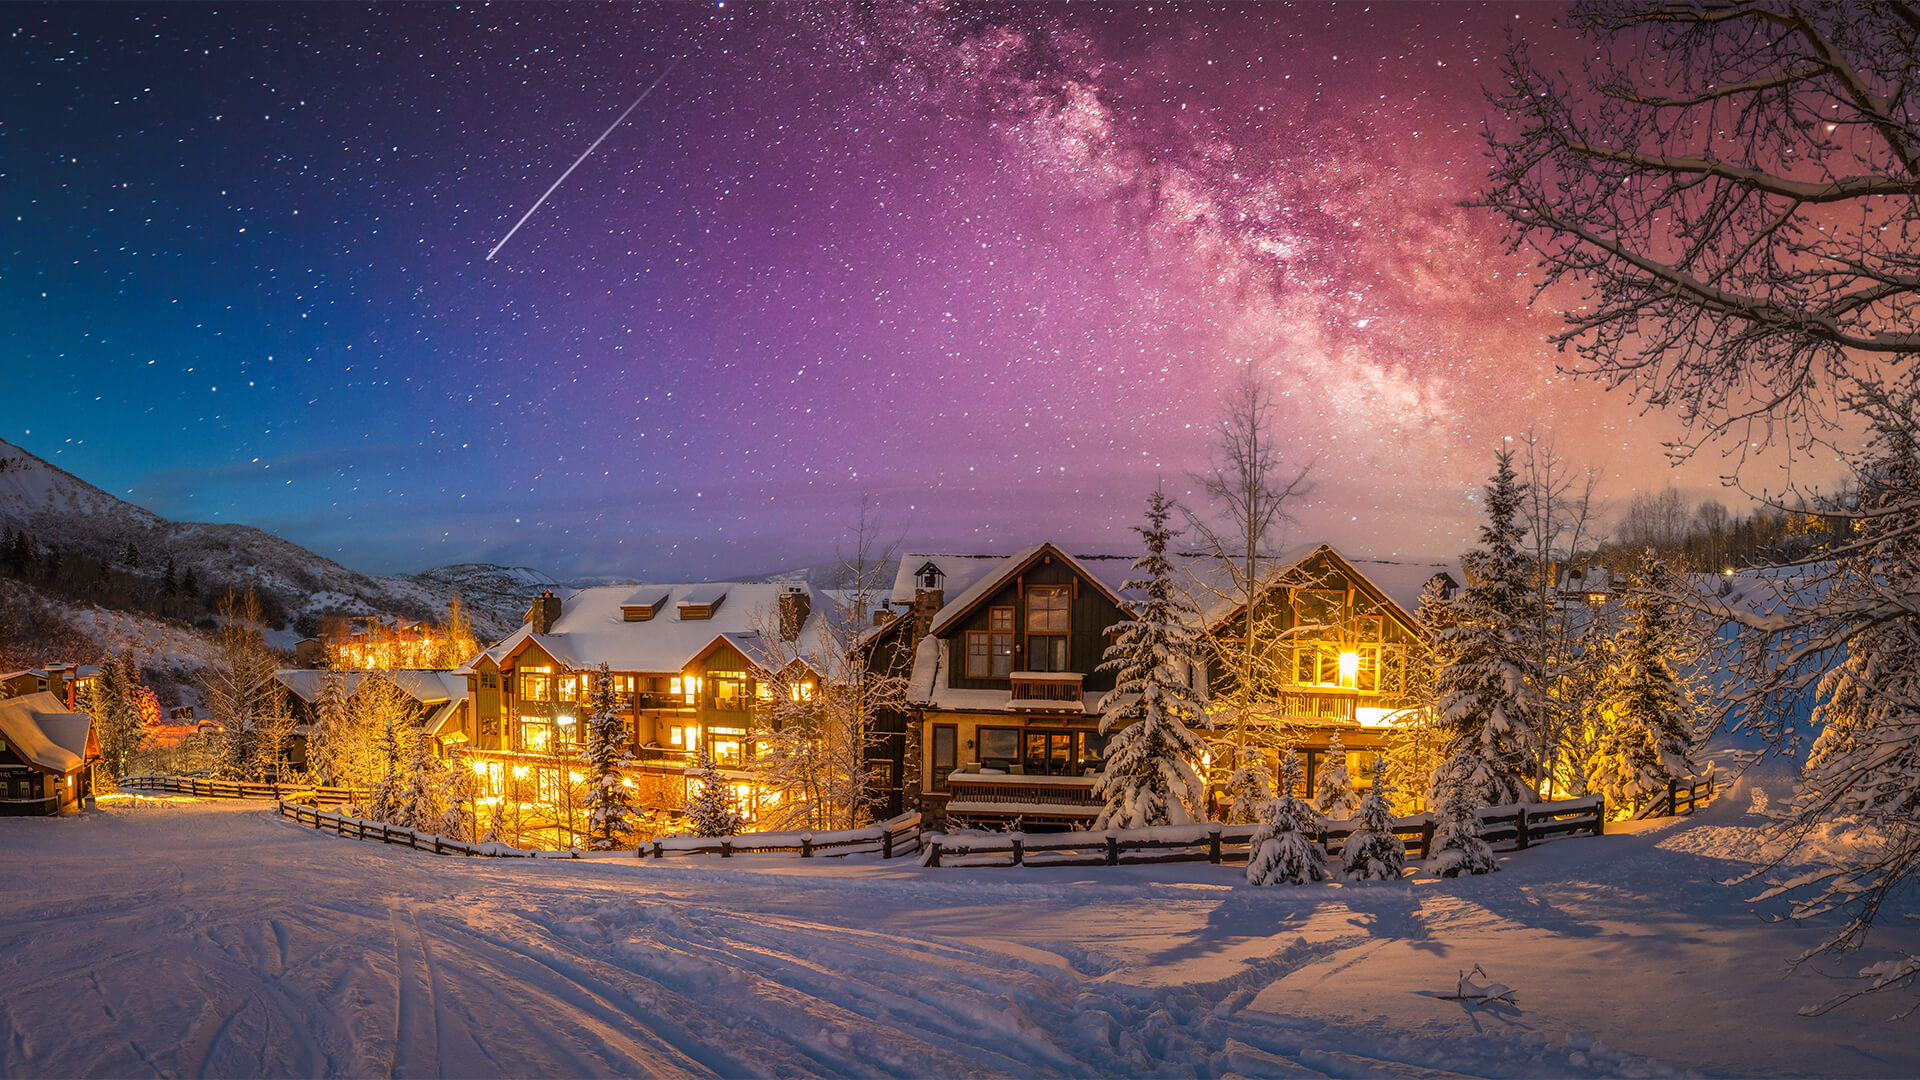 Ski resort in Aspen, Colorado